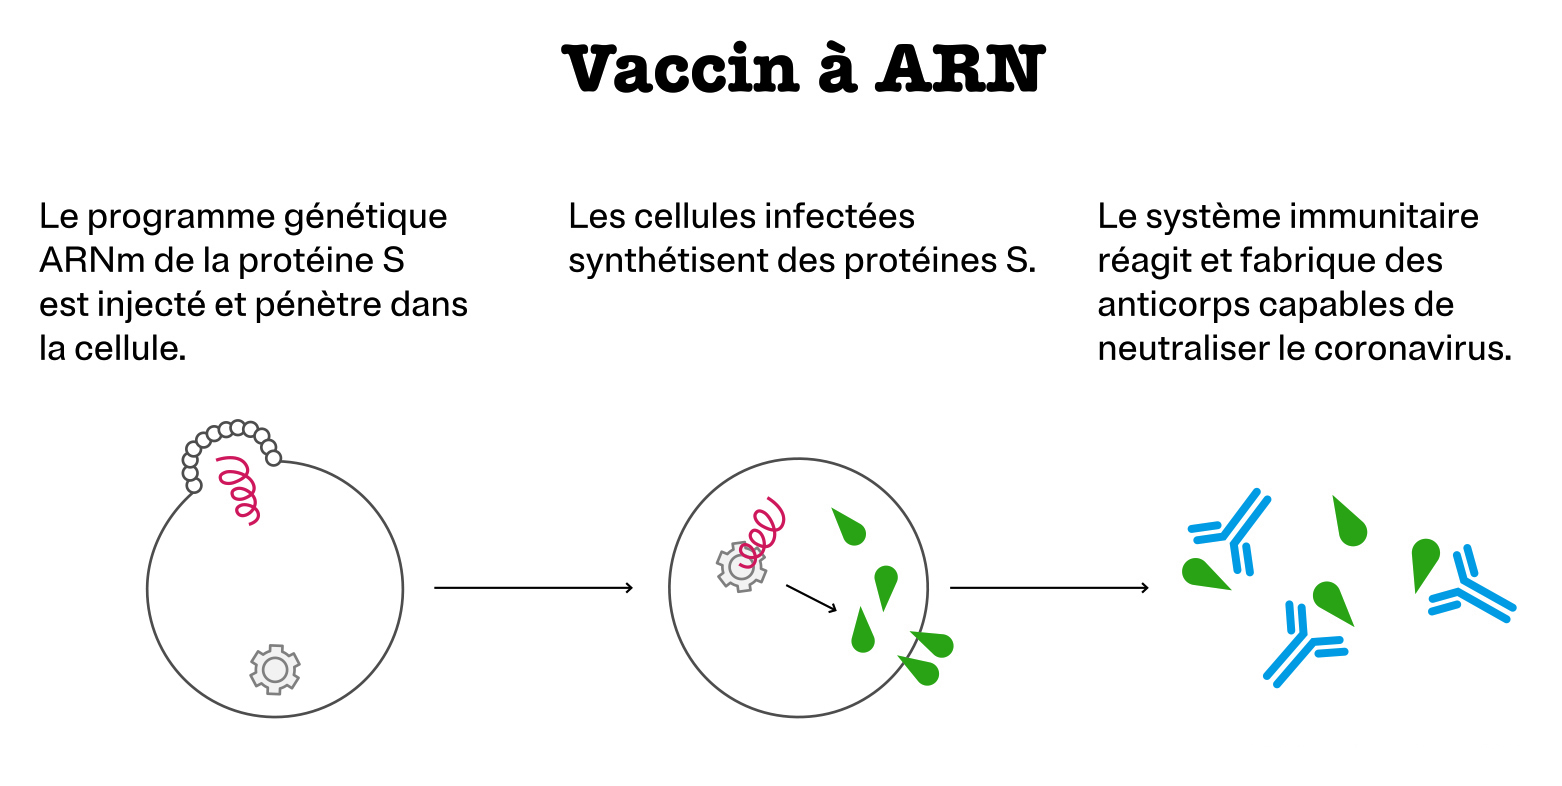 Vaccin à ARN : Le programme génétique ARNm de la protéine S est injecté et pénètre dans la cellule. Les cellules infectées synthétisent des protéines S. Le système immunitaire réagit et fabrique des anticorps capable de neutraliser le coronavirus.